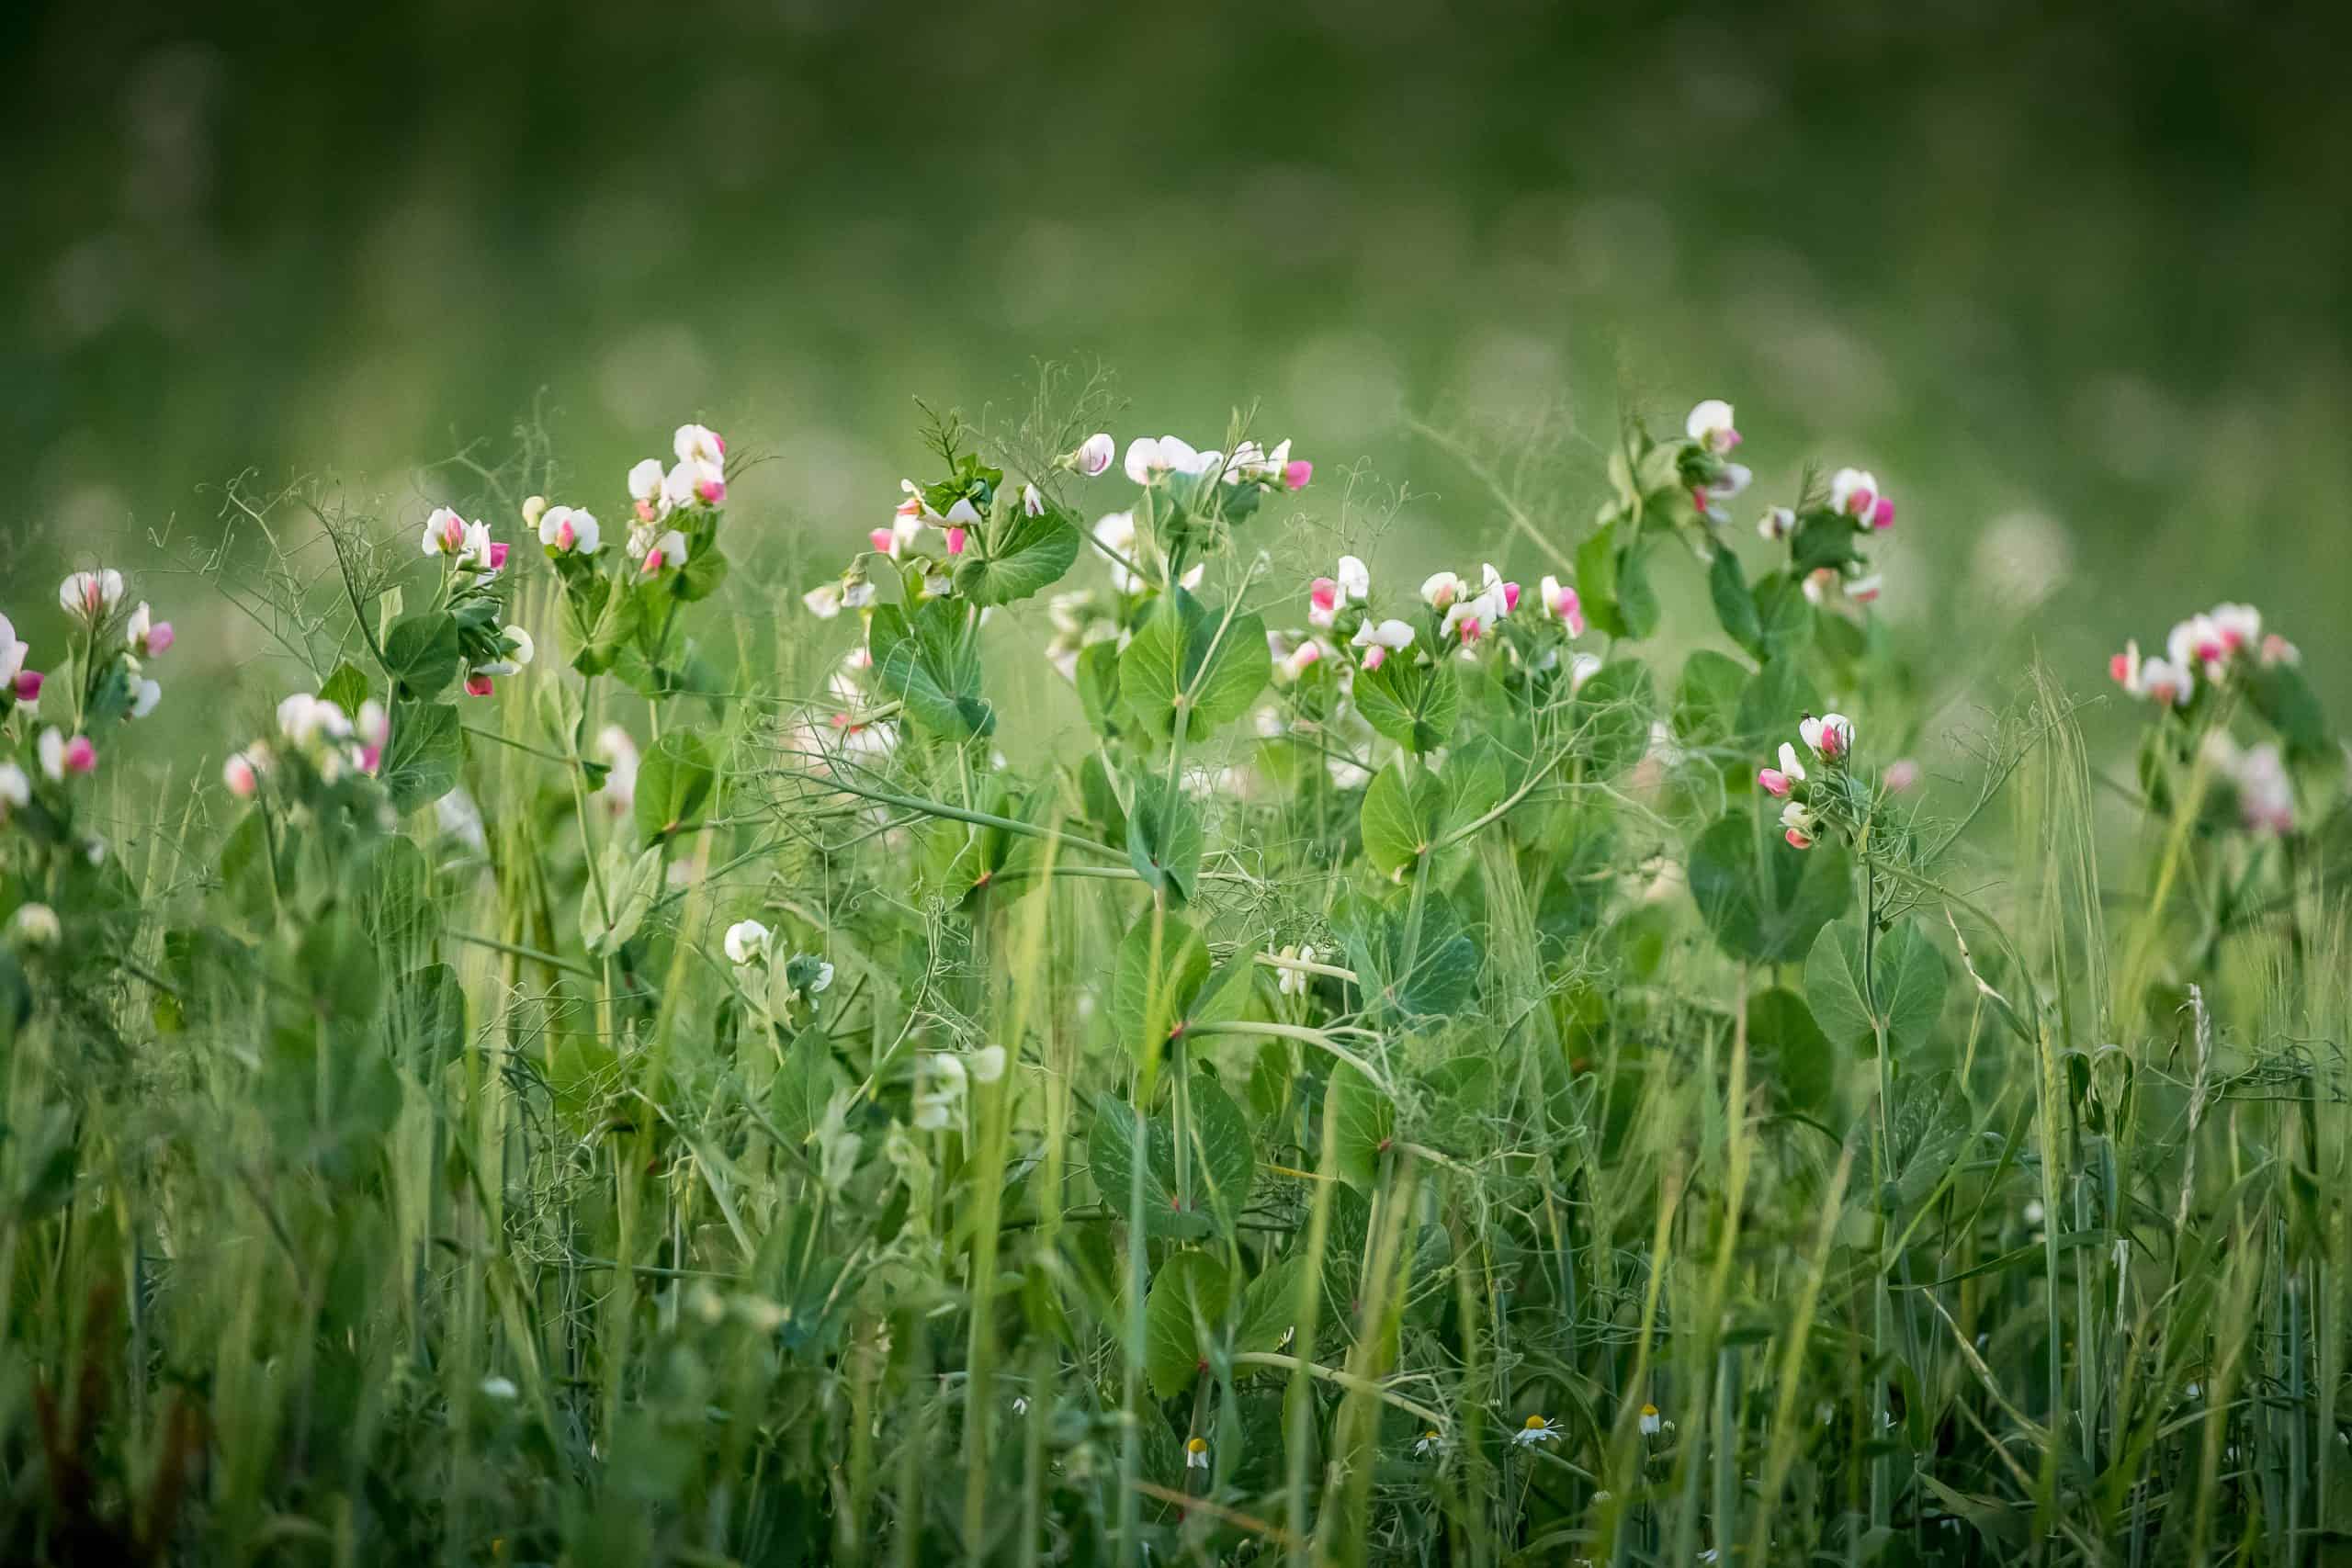 Field of flowering peas